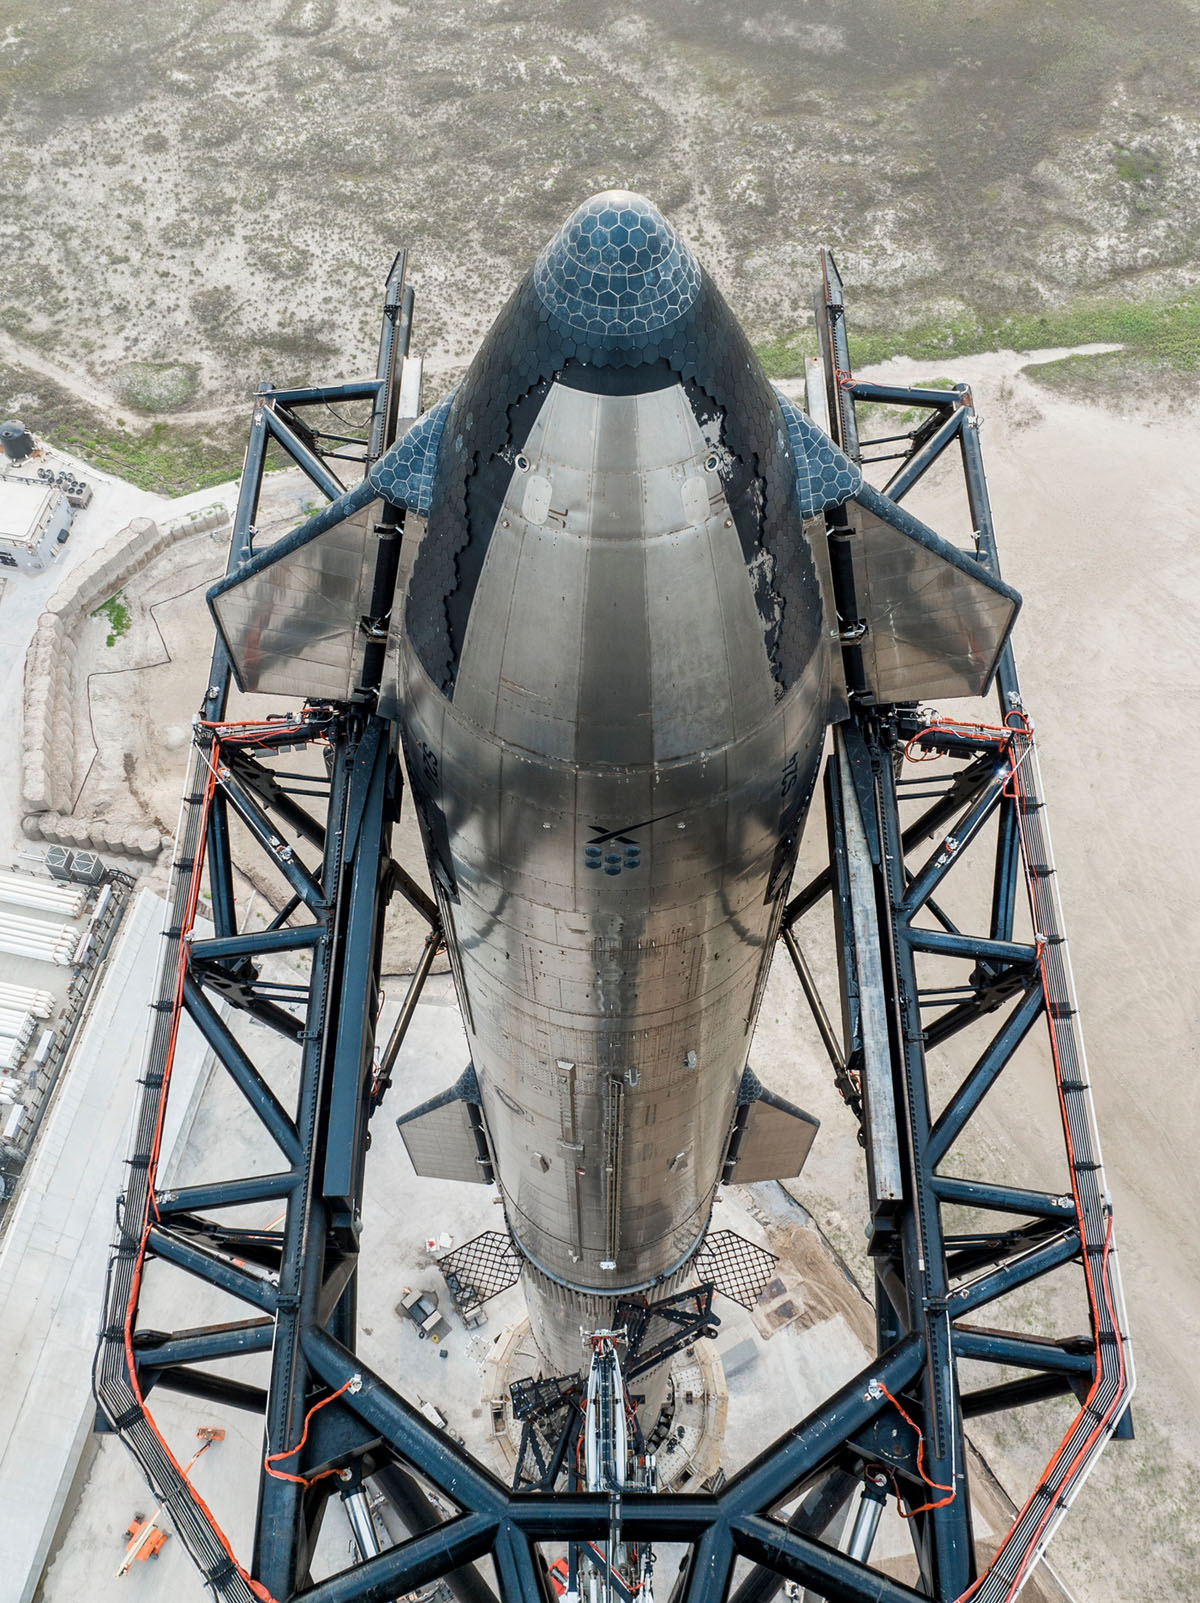 По словам CEO и главного инженера SpaceX Илона Маска, Starship в будущем заменит Falcon 9 и Falcon Heavy, грузовой и пилотируемый Dragon V2.